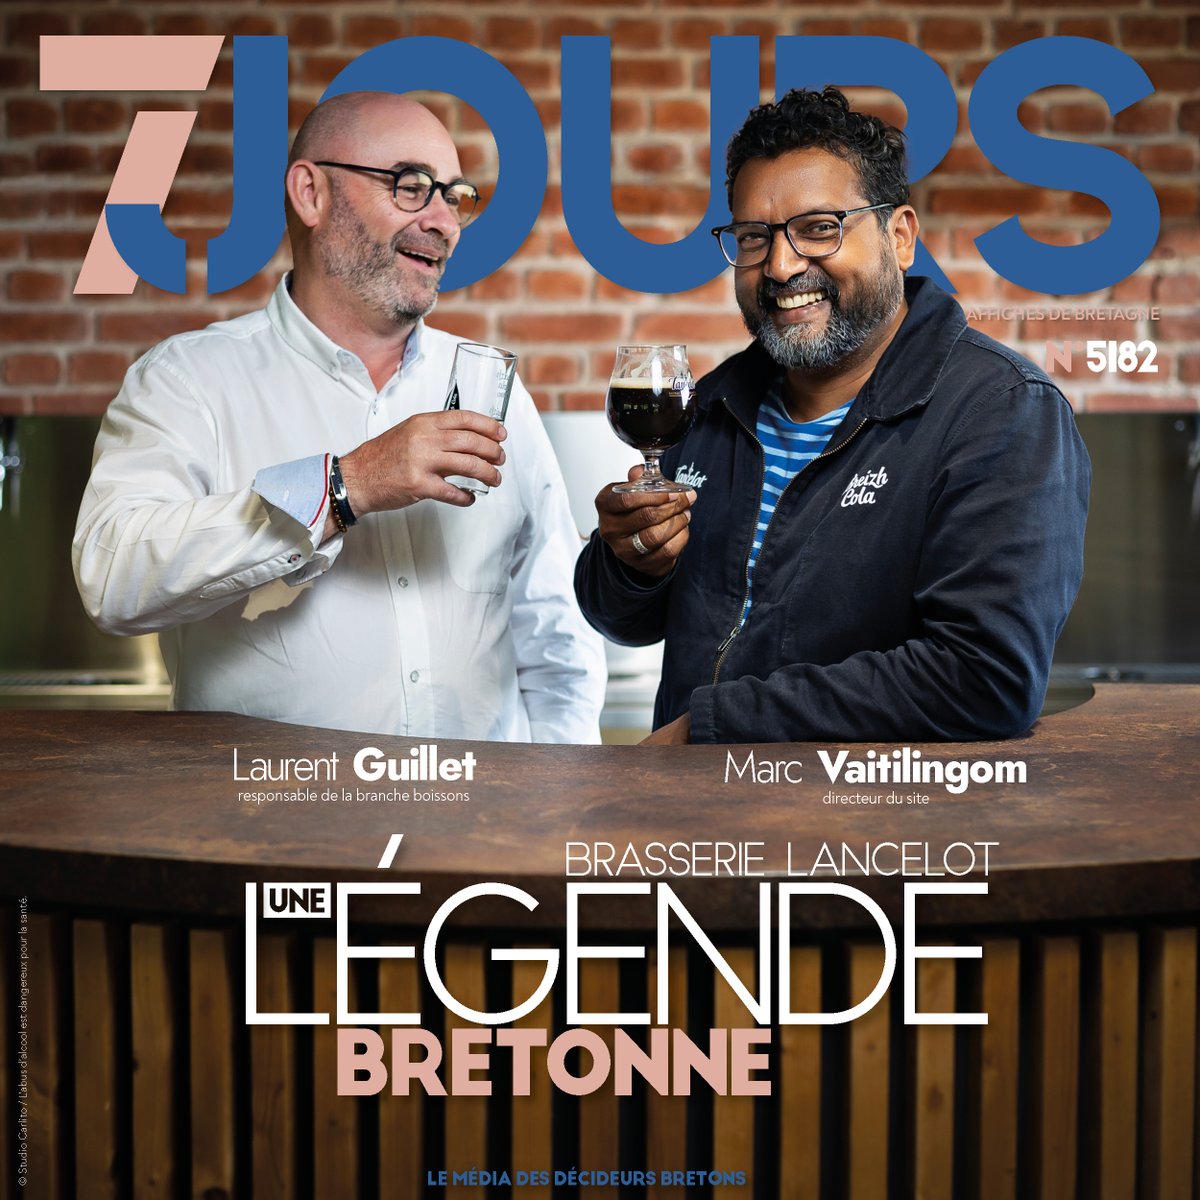 Le nouveau magazine est sorti 🗞️ Découvrez le succès de la Brasserie Lancelot 🍻 Et aussi …Izidoor rend les activités de plein air plus accessibles 🚀, l'#iA dans le #Marketing inbound 💡, l'esprit des 60's à Rennes 🎨, et bien plus encore! 7jours.fr